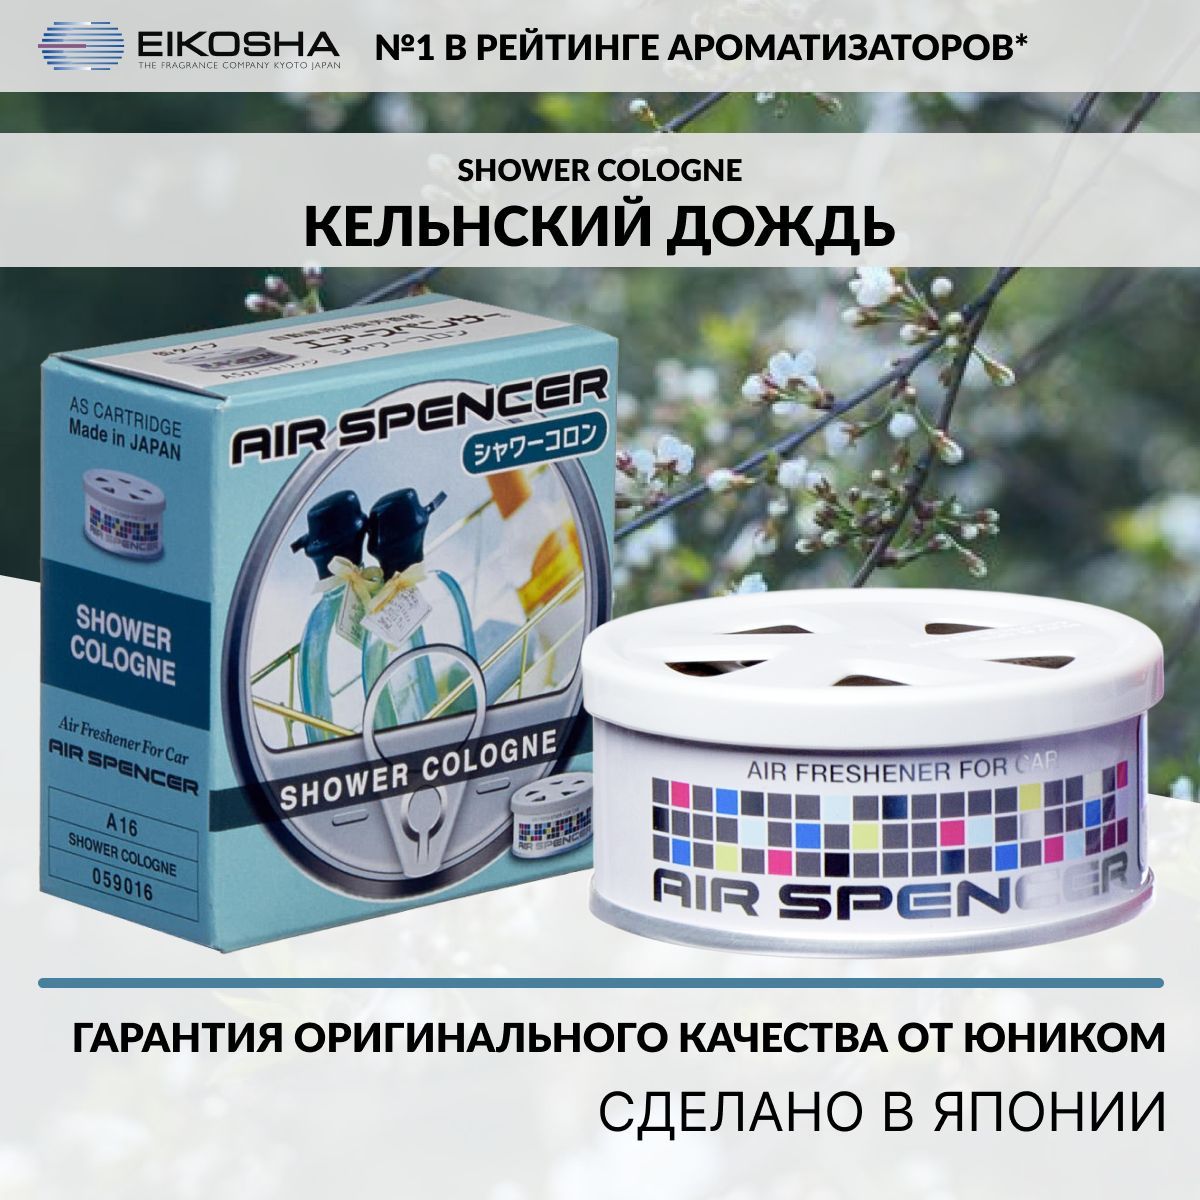 Автомобильный ароматизатор SPIRIT REFILL - SHOWER COLOGNE A-16 - купить в Москве, цены на Мегамаркет | 100000372585